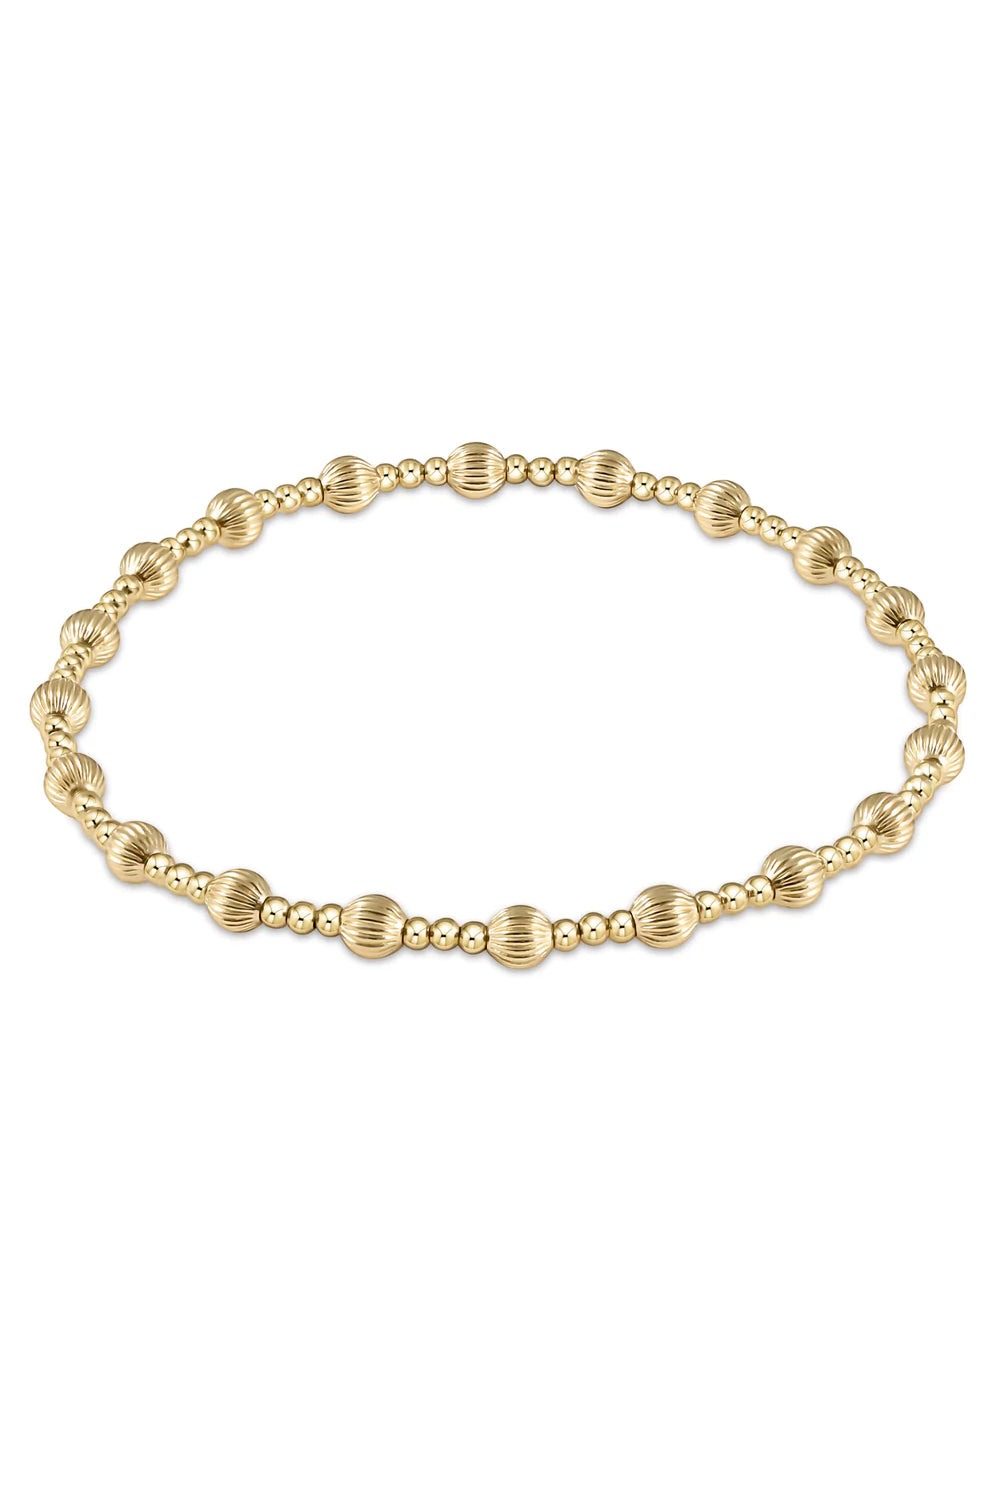 enewton: Dignity Sincerity Pattern 4mm Bead Bracelet - Gold | Makk Fashions